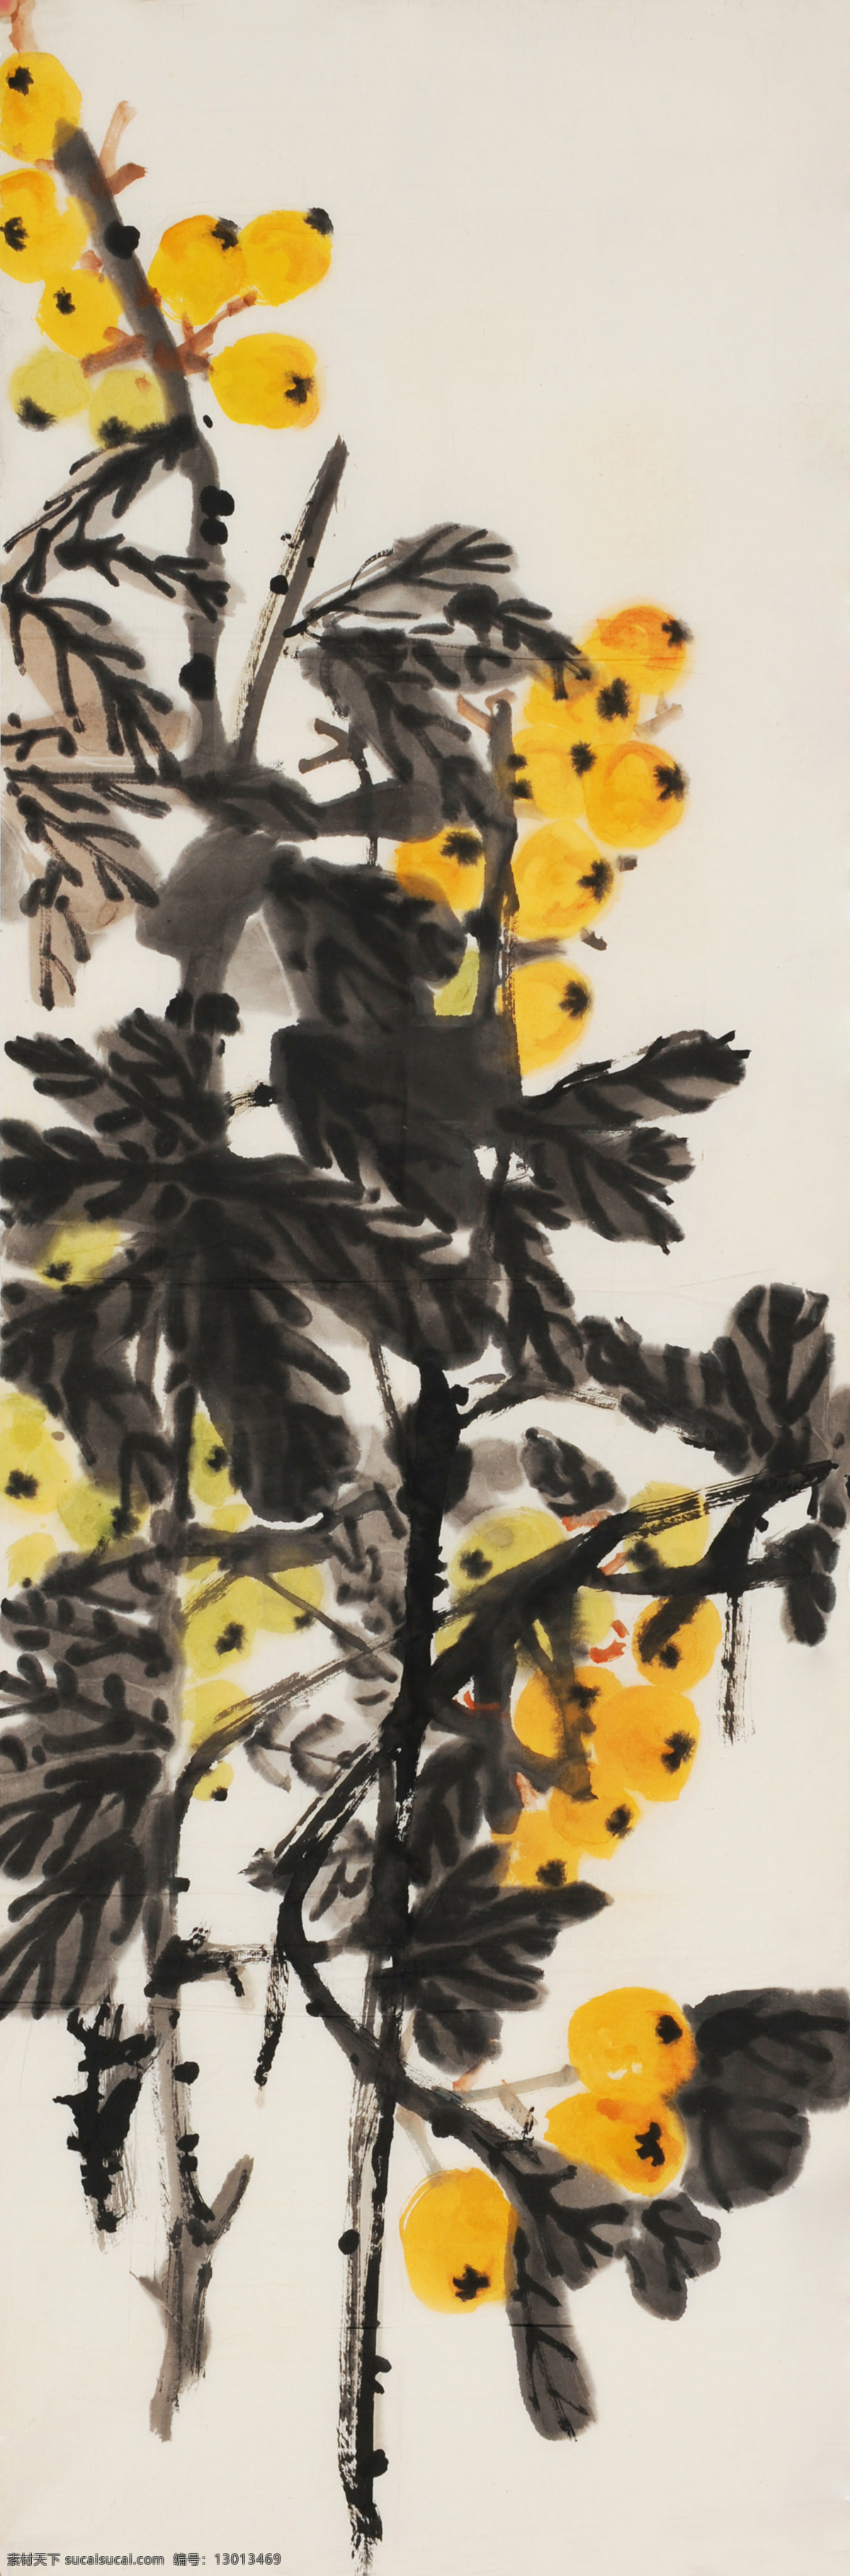 位图 植物图案 写意花卉 花朵 超高清 免费素材 面料图库 服装图案 黑色